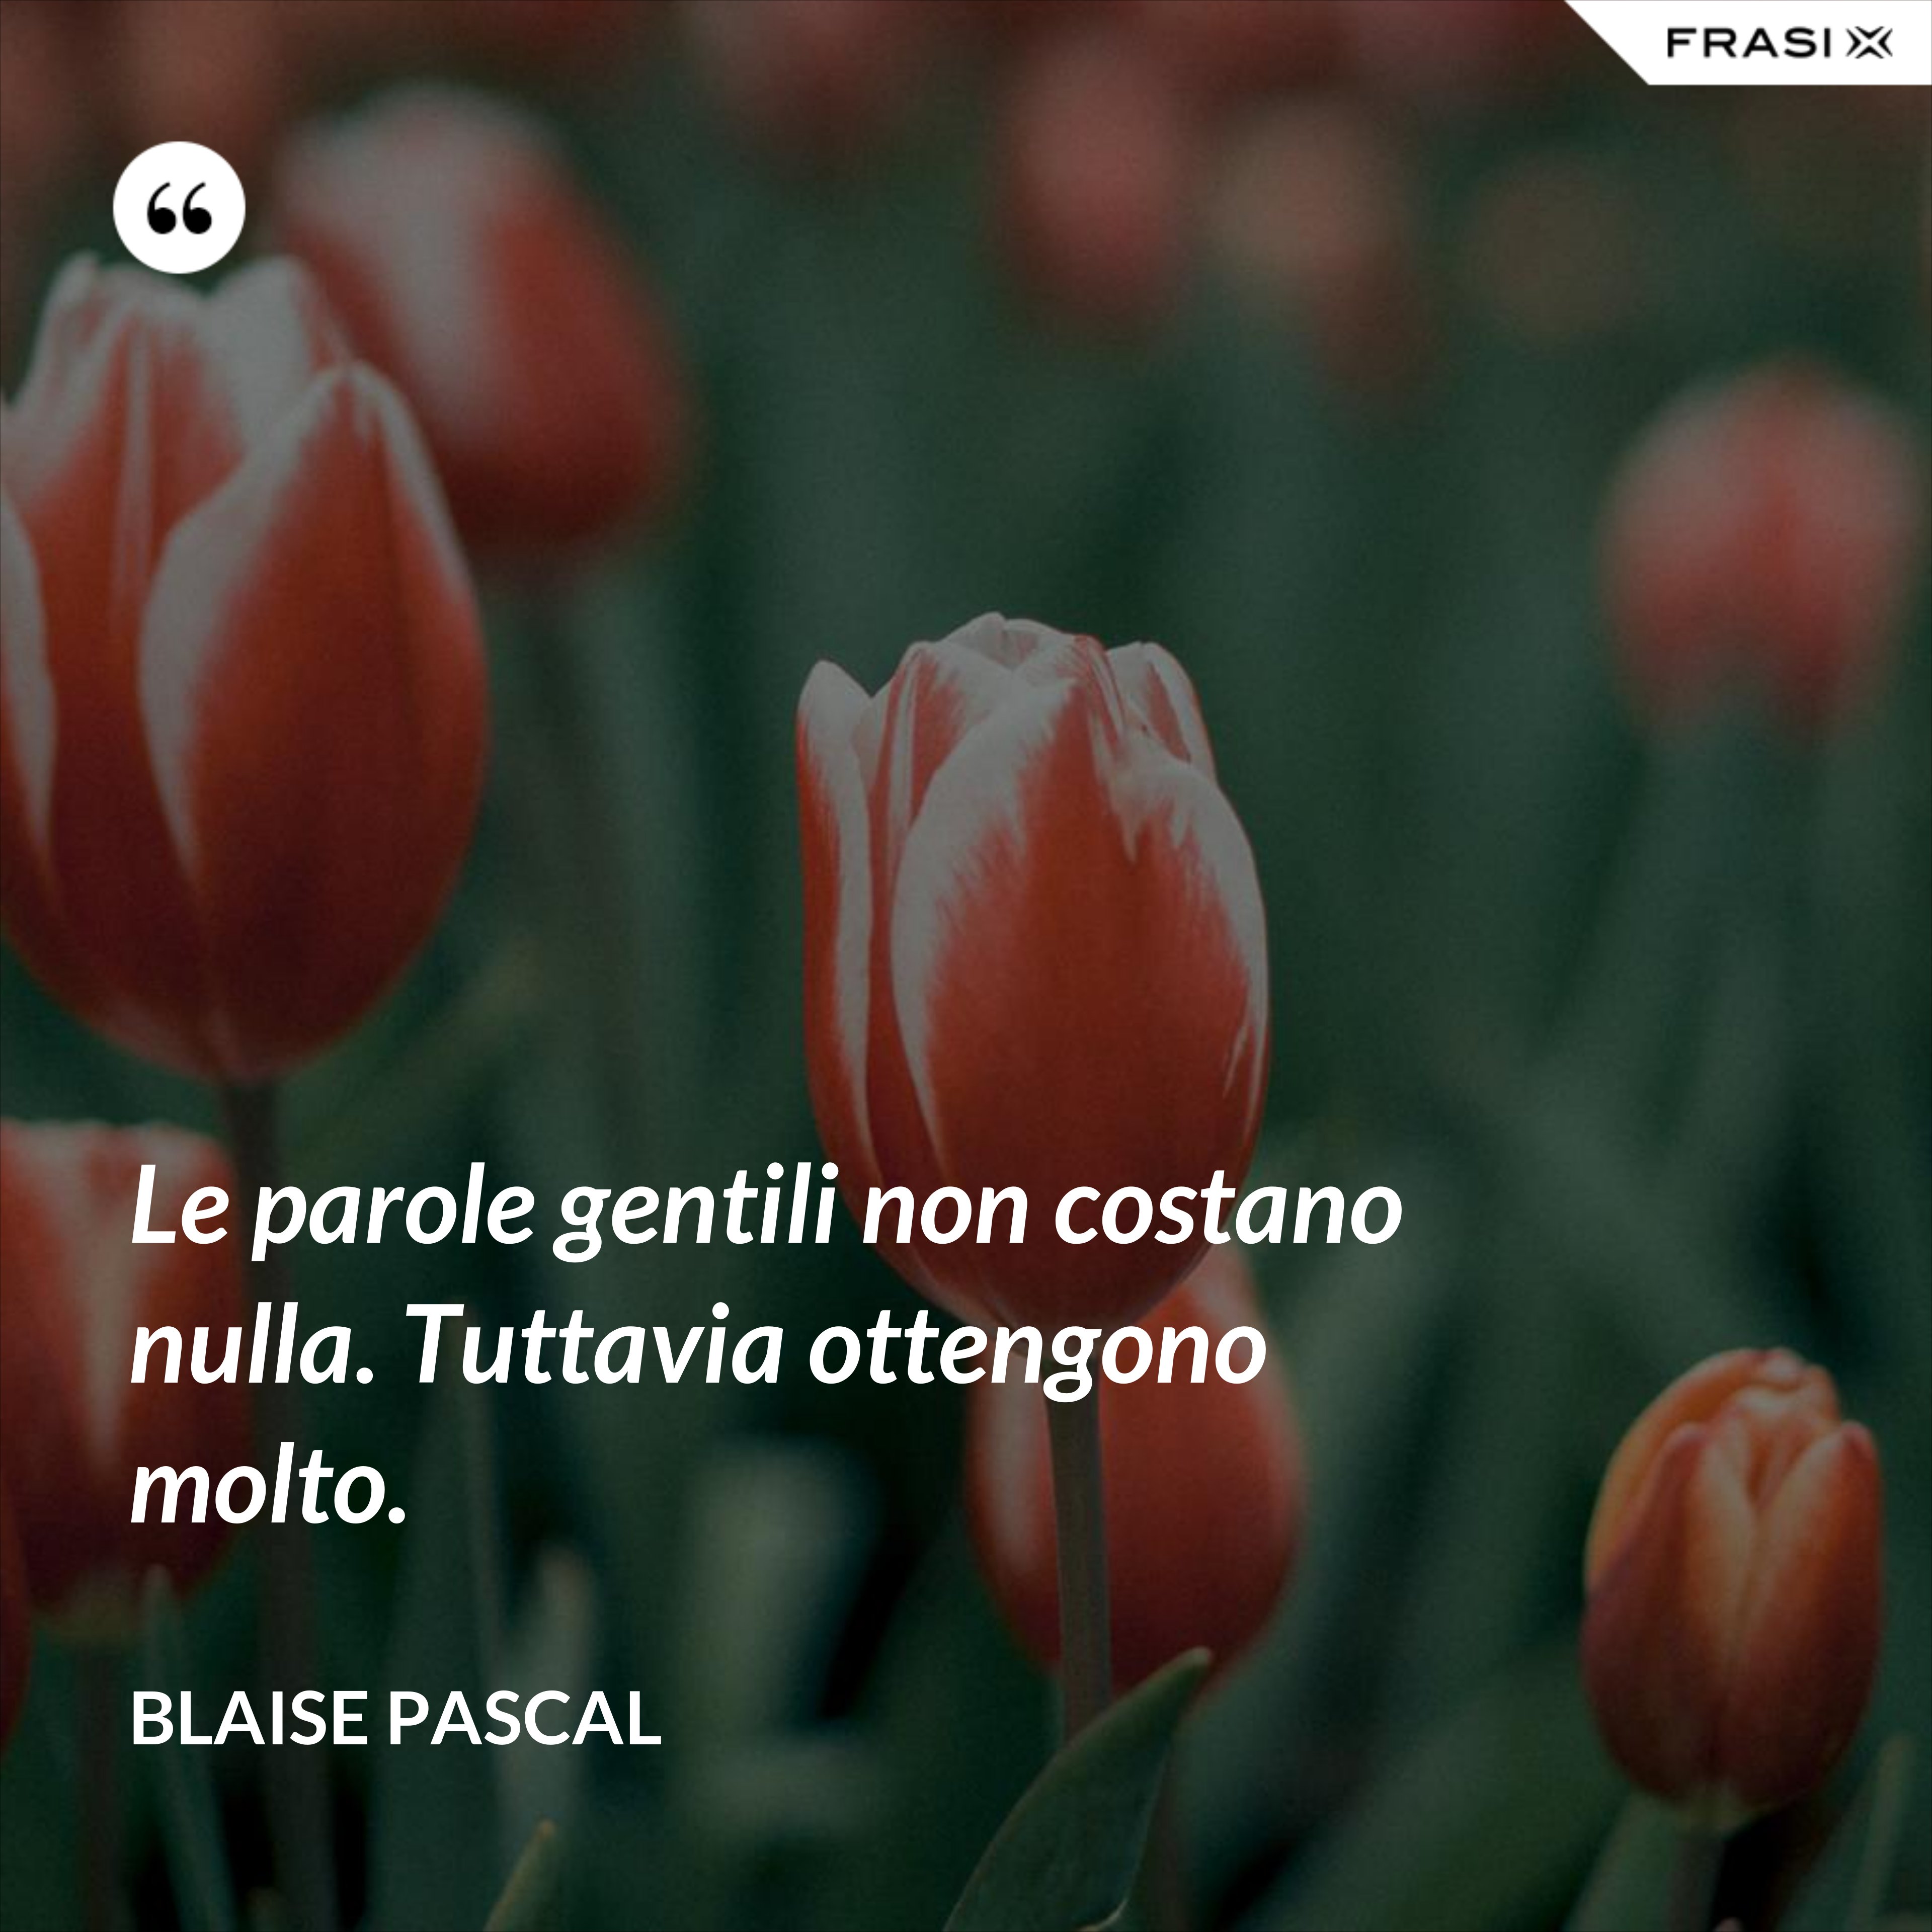 Le parole gentili non costano nulla. Tuttavia ottengono molto. - Blaise Pascal